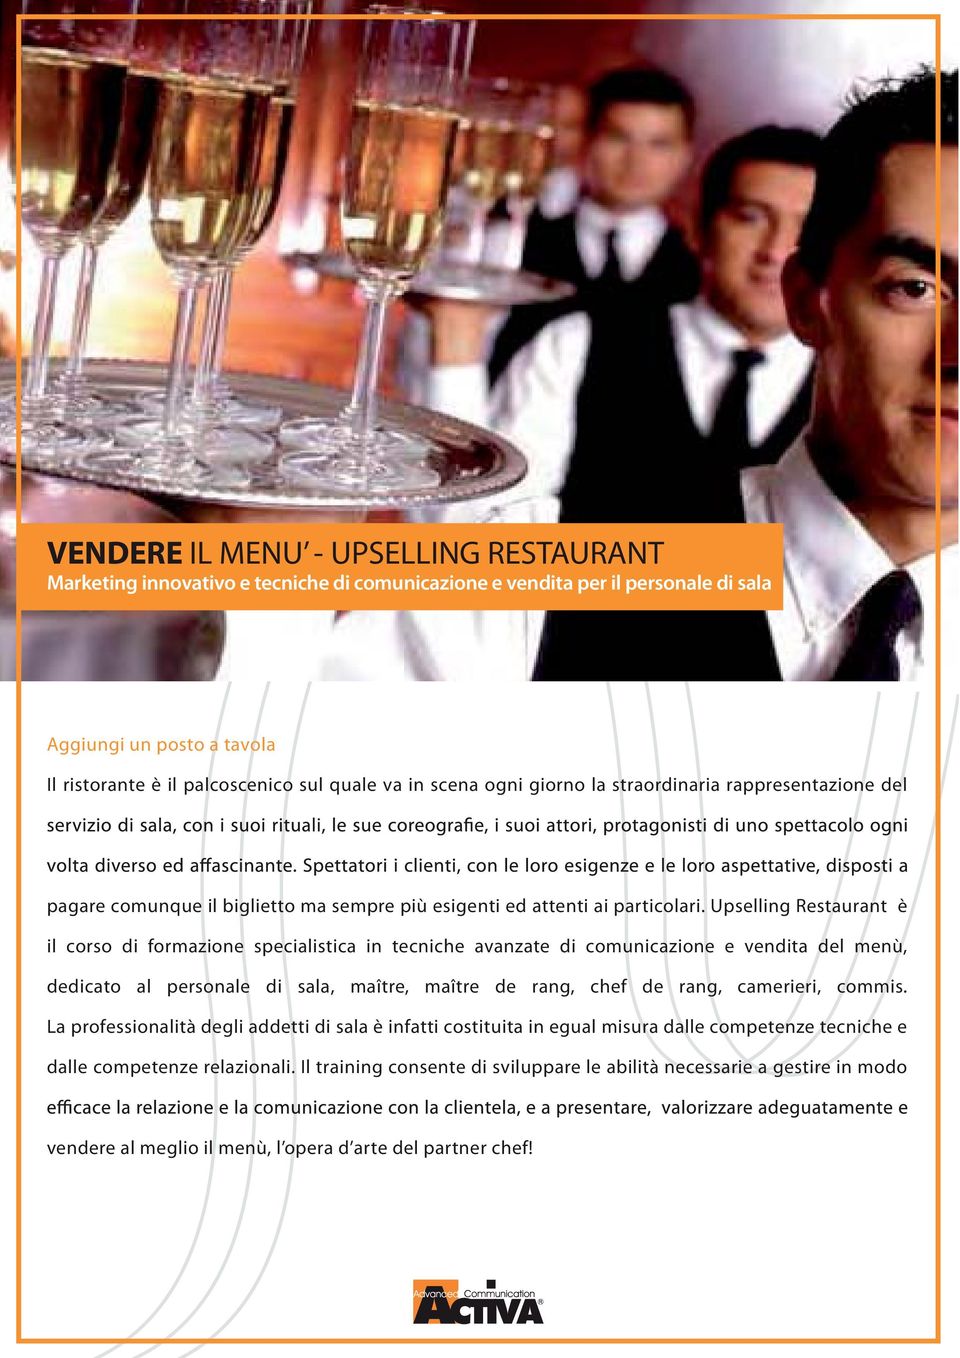 Upselling Restaurant è il corso di formazione specialistica in tecniche avanzate di comunicazione e vendita del menù, dedicato al personale di sala, maître, maître de rang, chef de rang, camerieri,